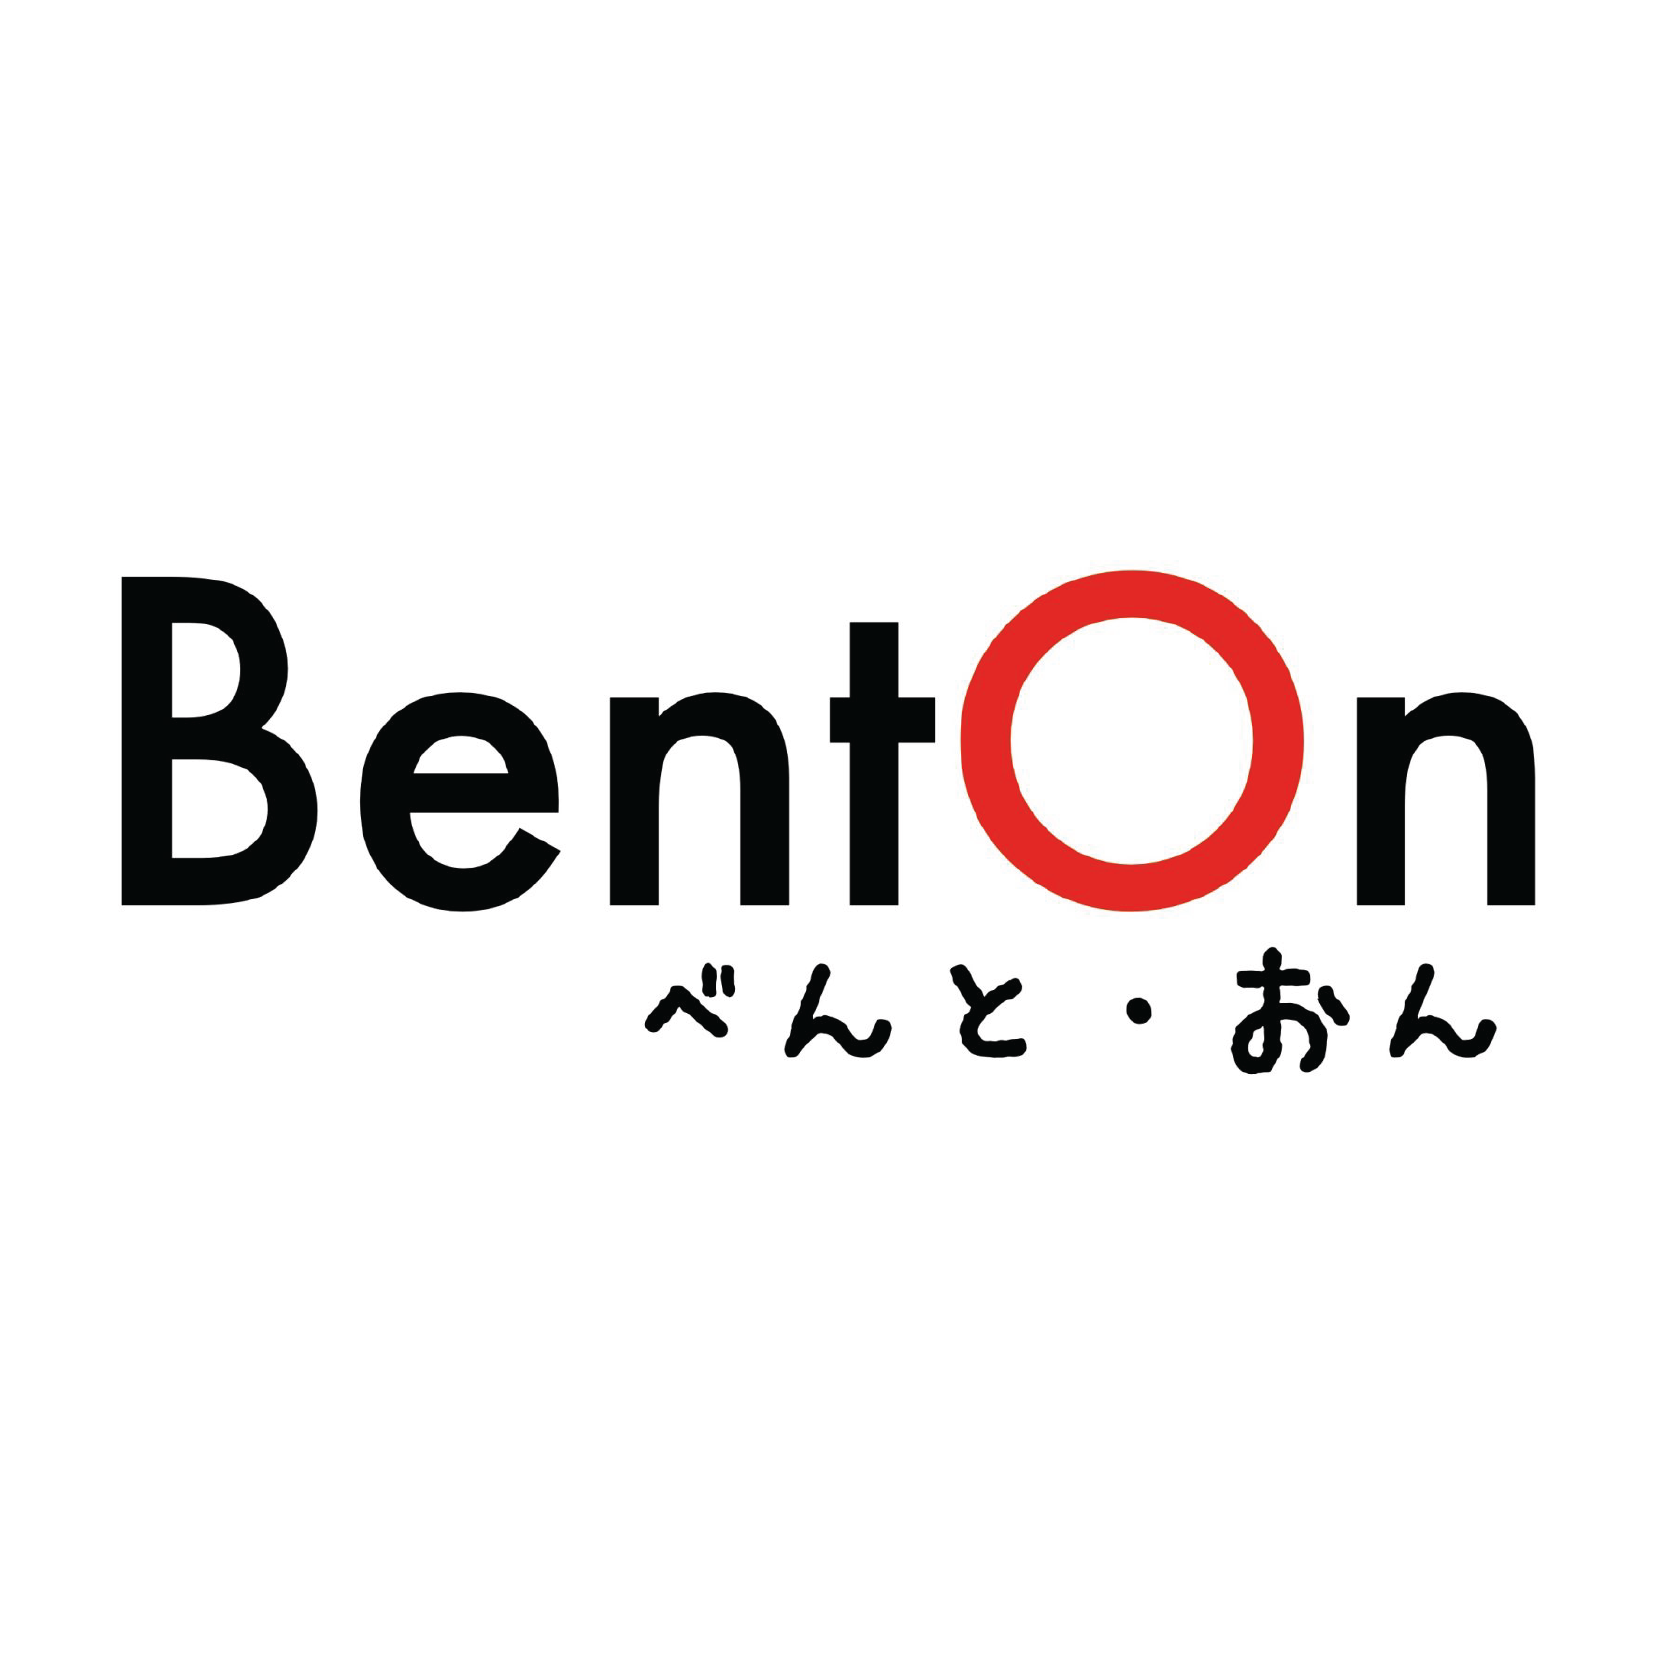 benton logo.png